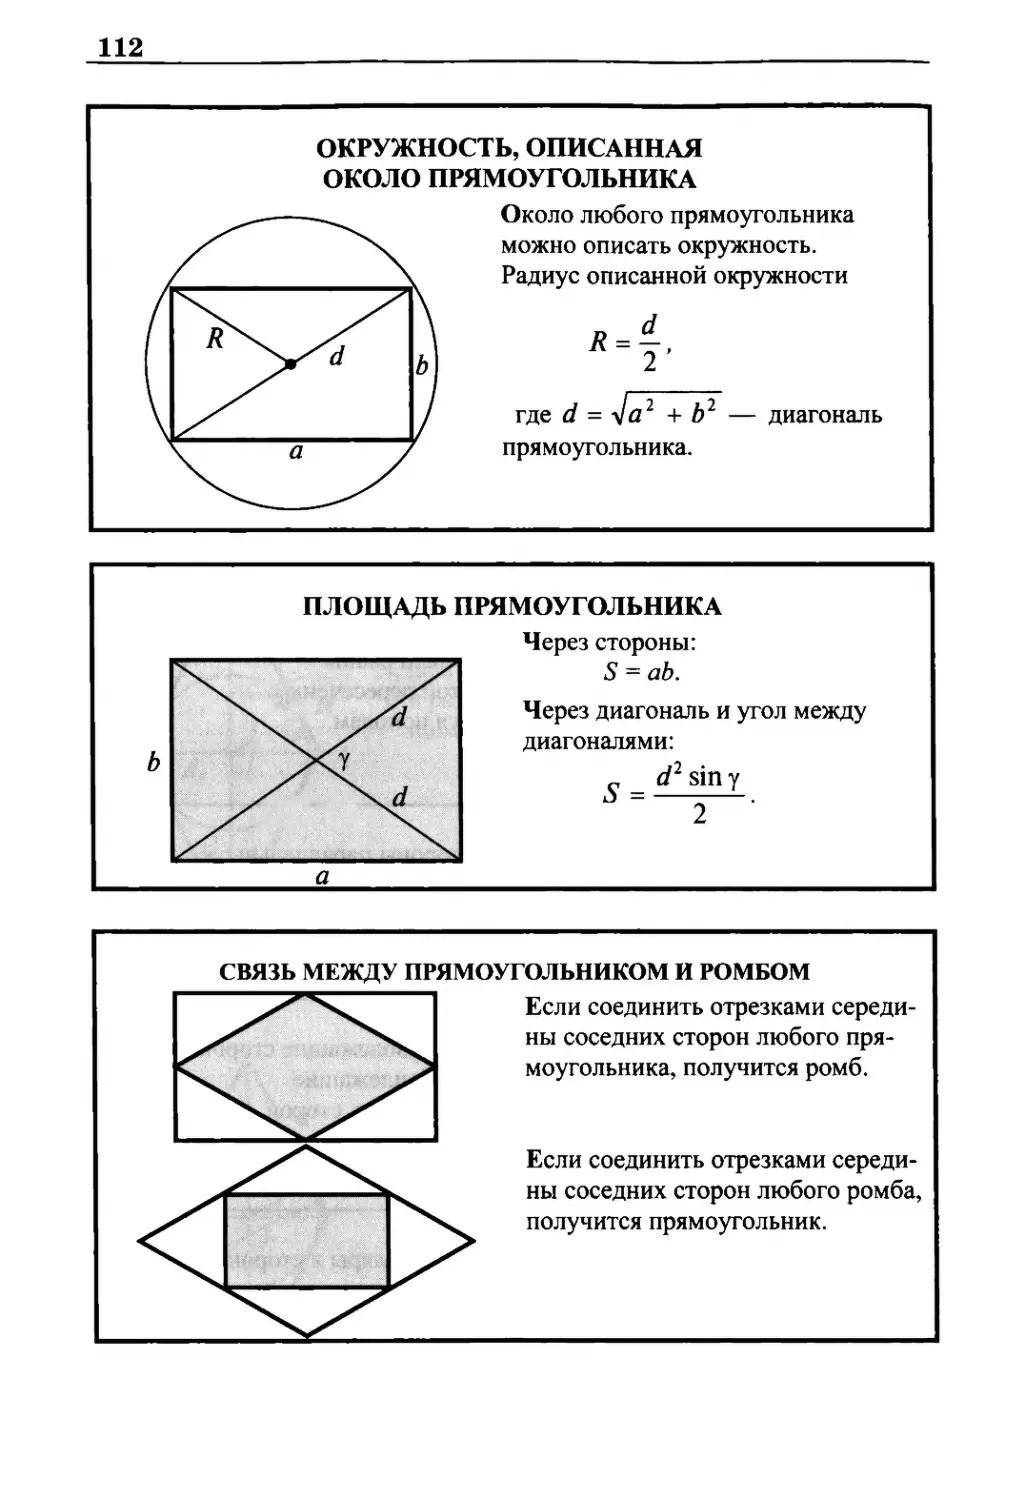 Окружность, описанная около прямоугольника
Площадь прямоугольника
Связь между прямоугольником и ромбом